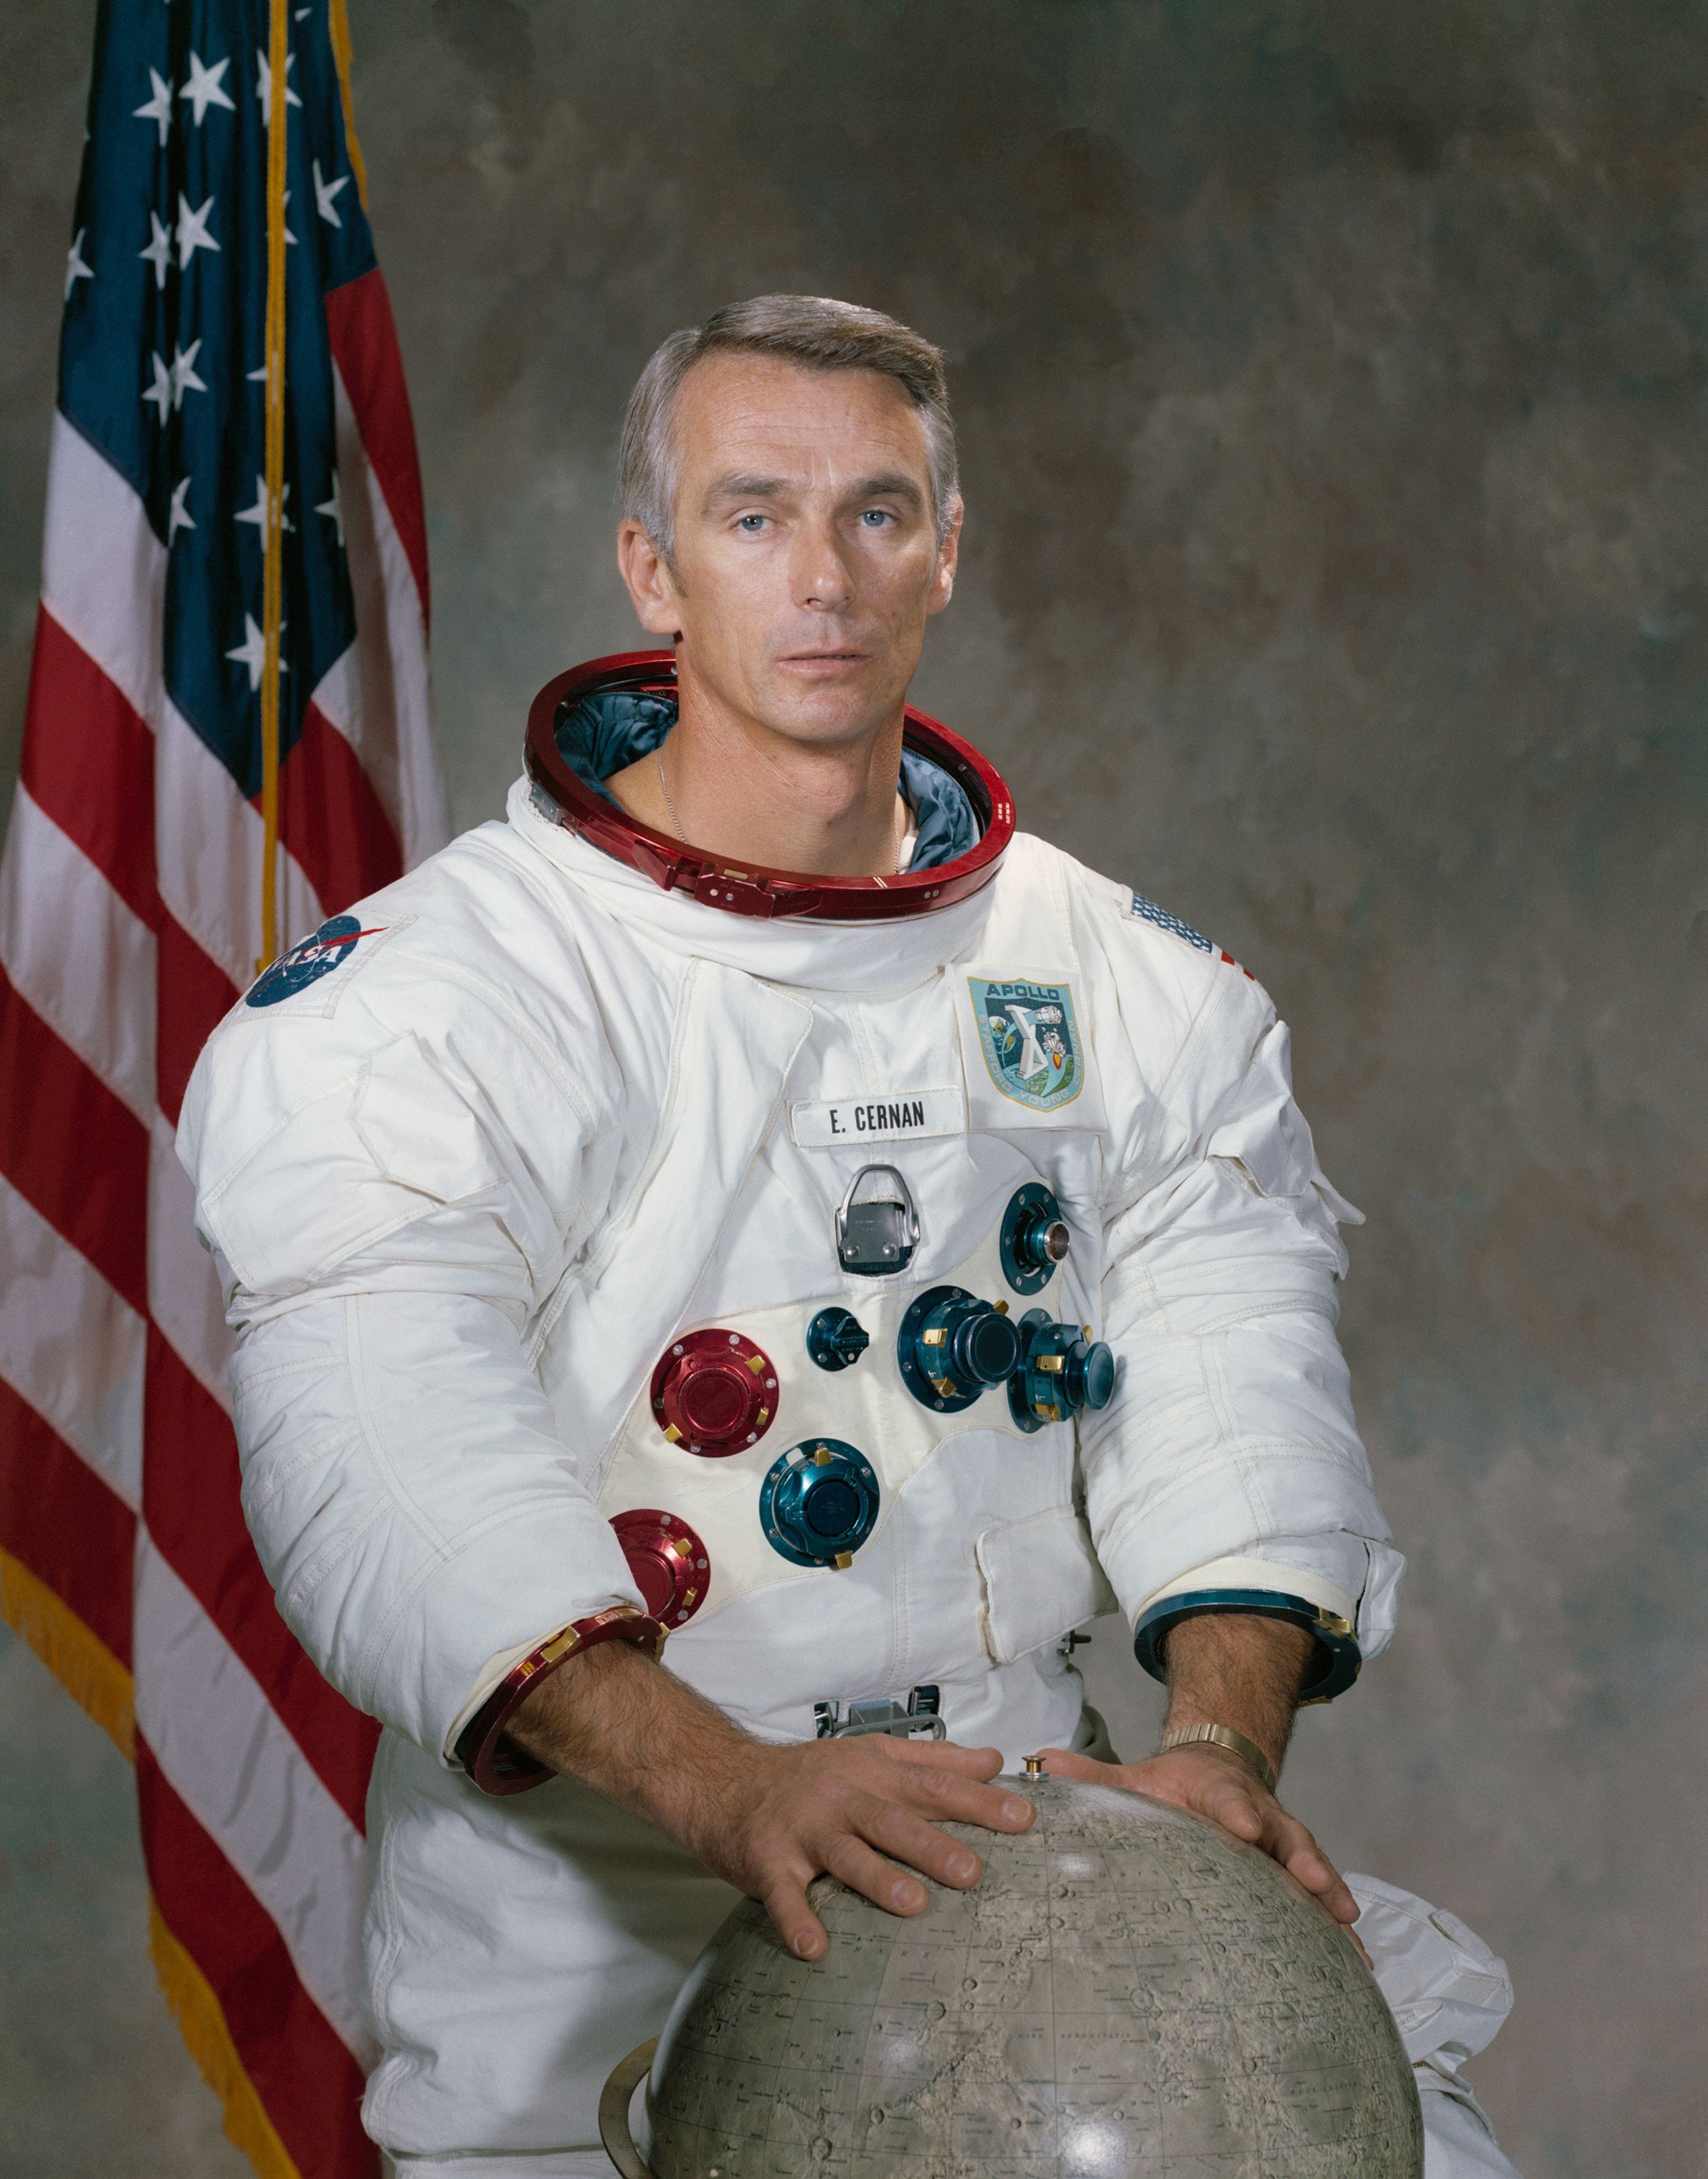 Gene Cernan, last man to walk on moon, dies